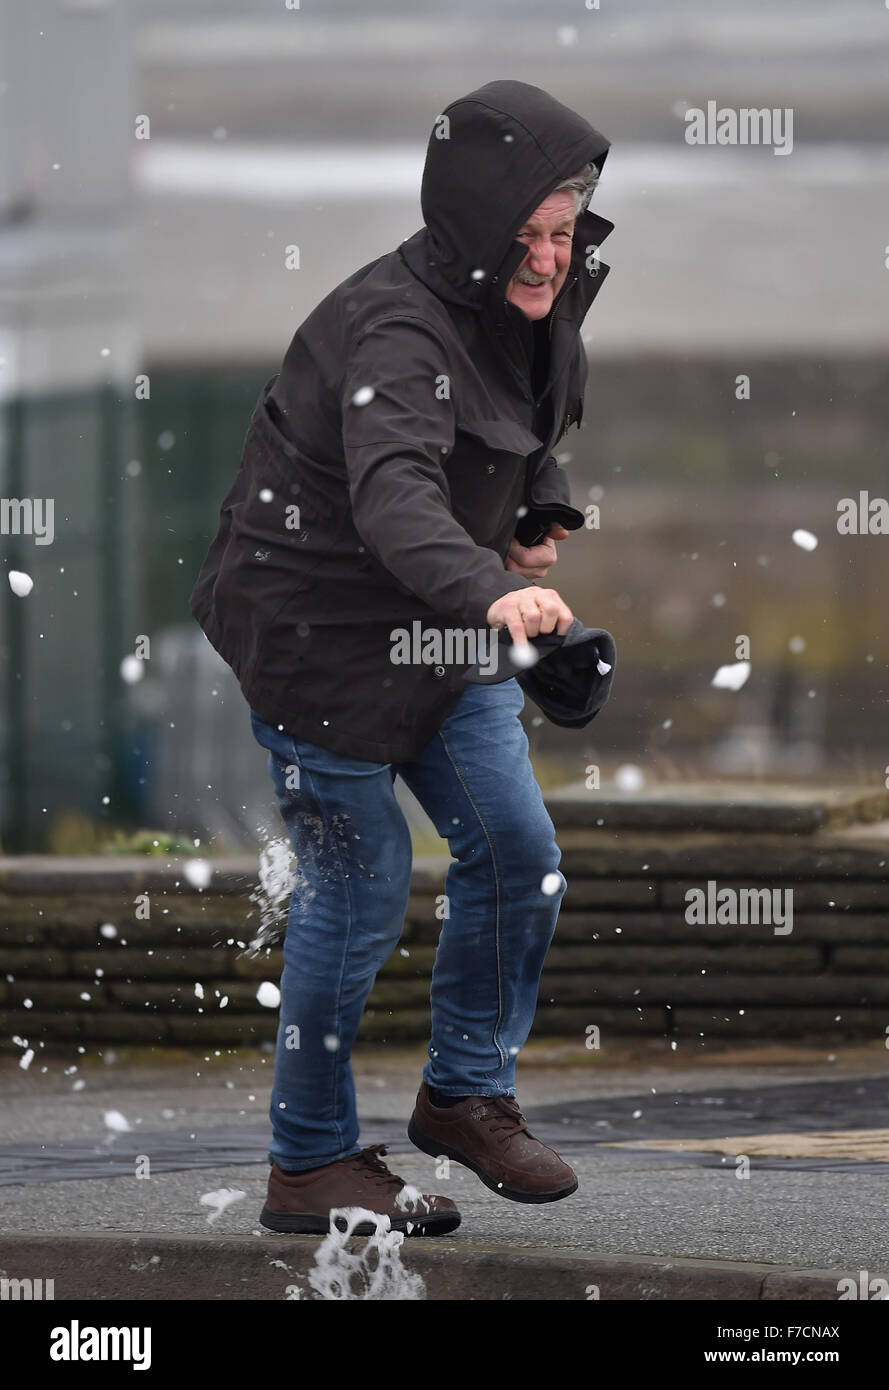 Ein Mann verliert fast seinen Hut bei starkem Wind verursacht durch Sturm Clodagh in Porthcawl Seafront, South Wales, UK. Stockfoto